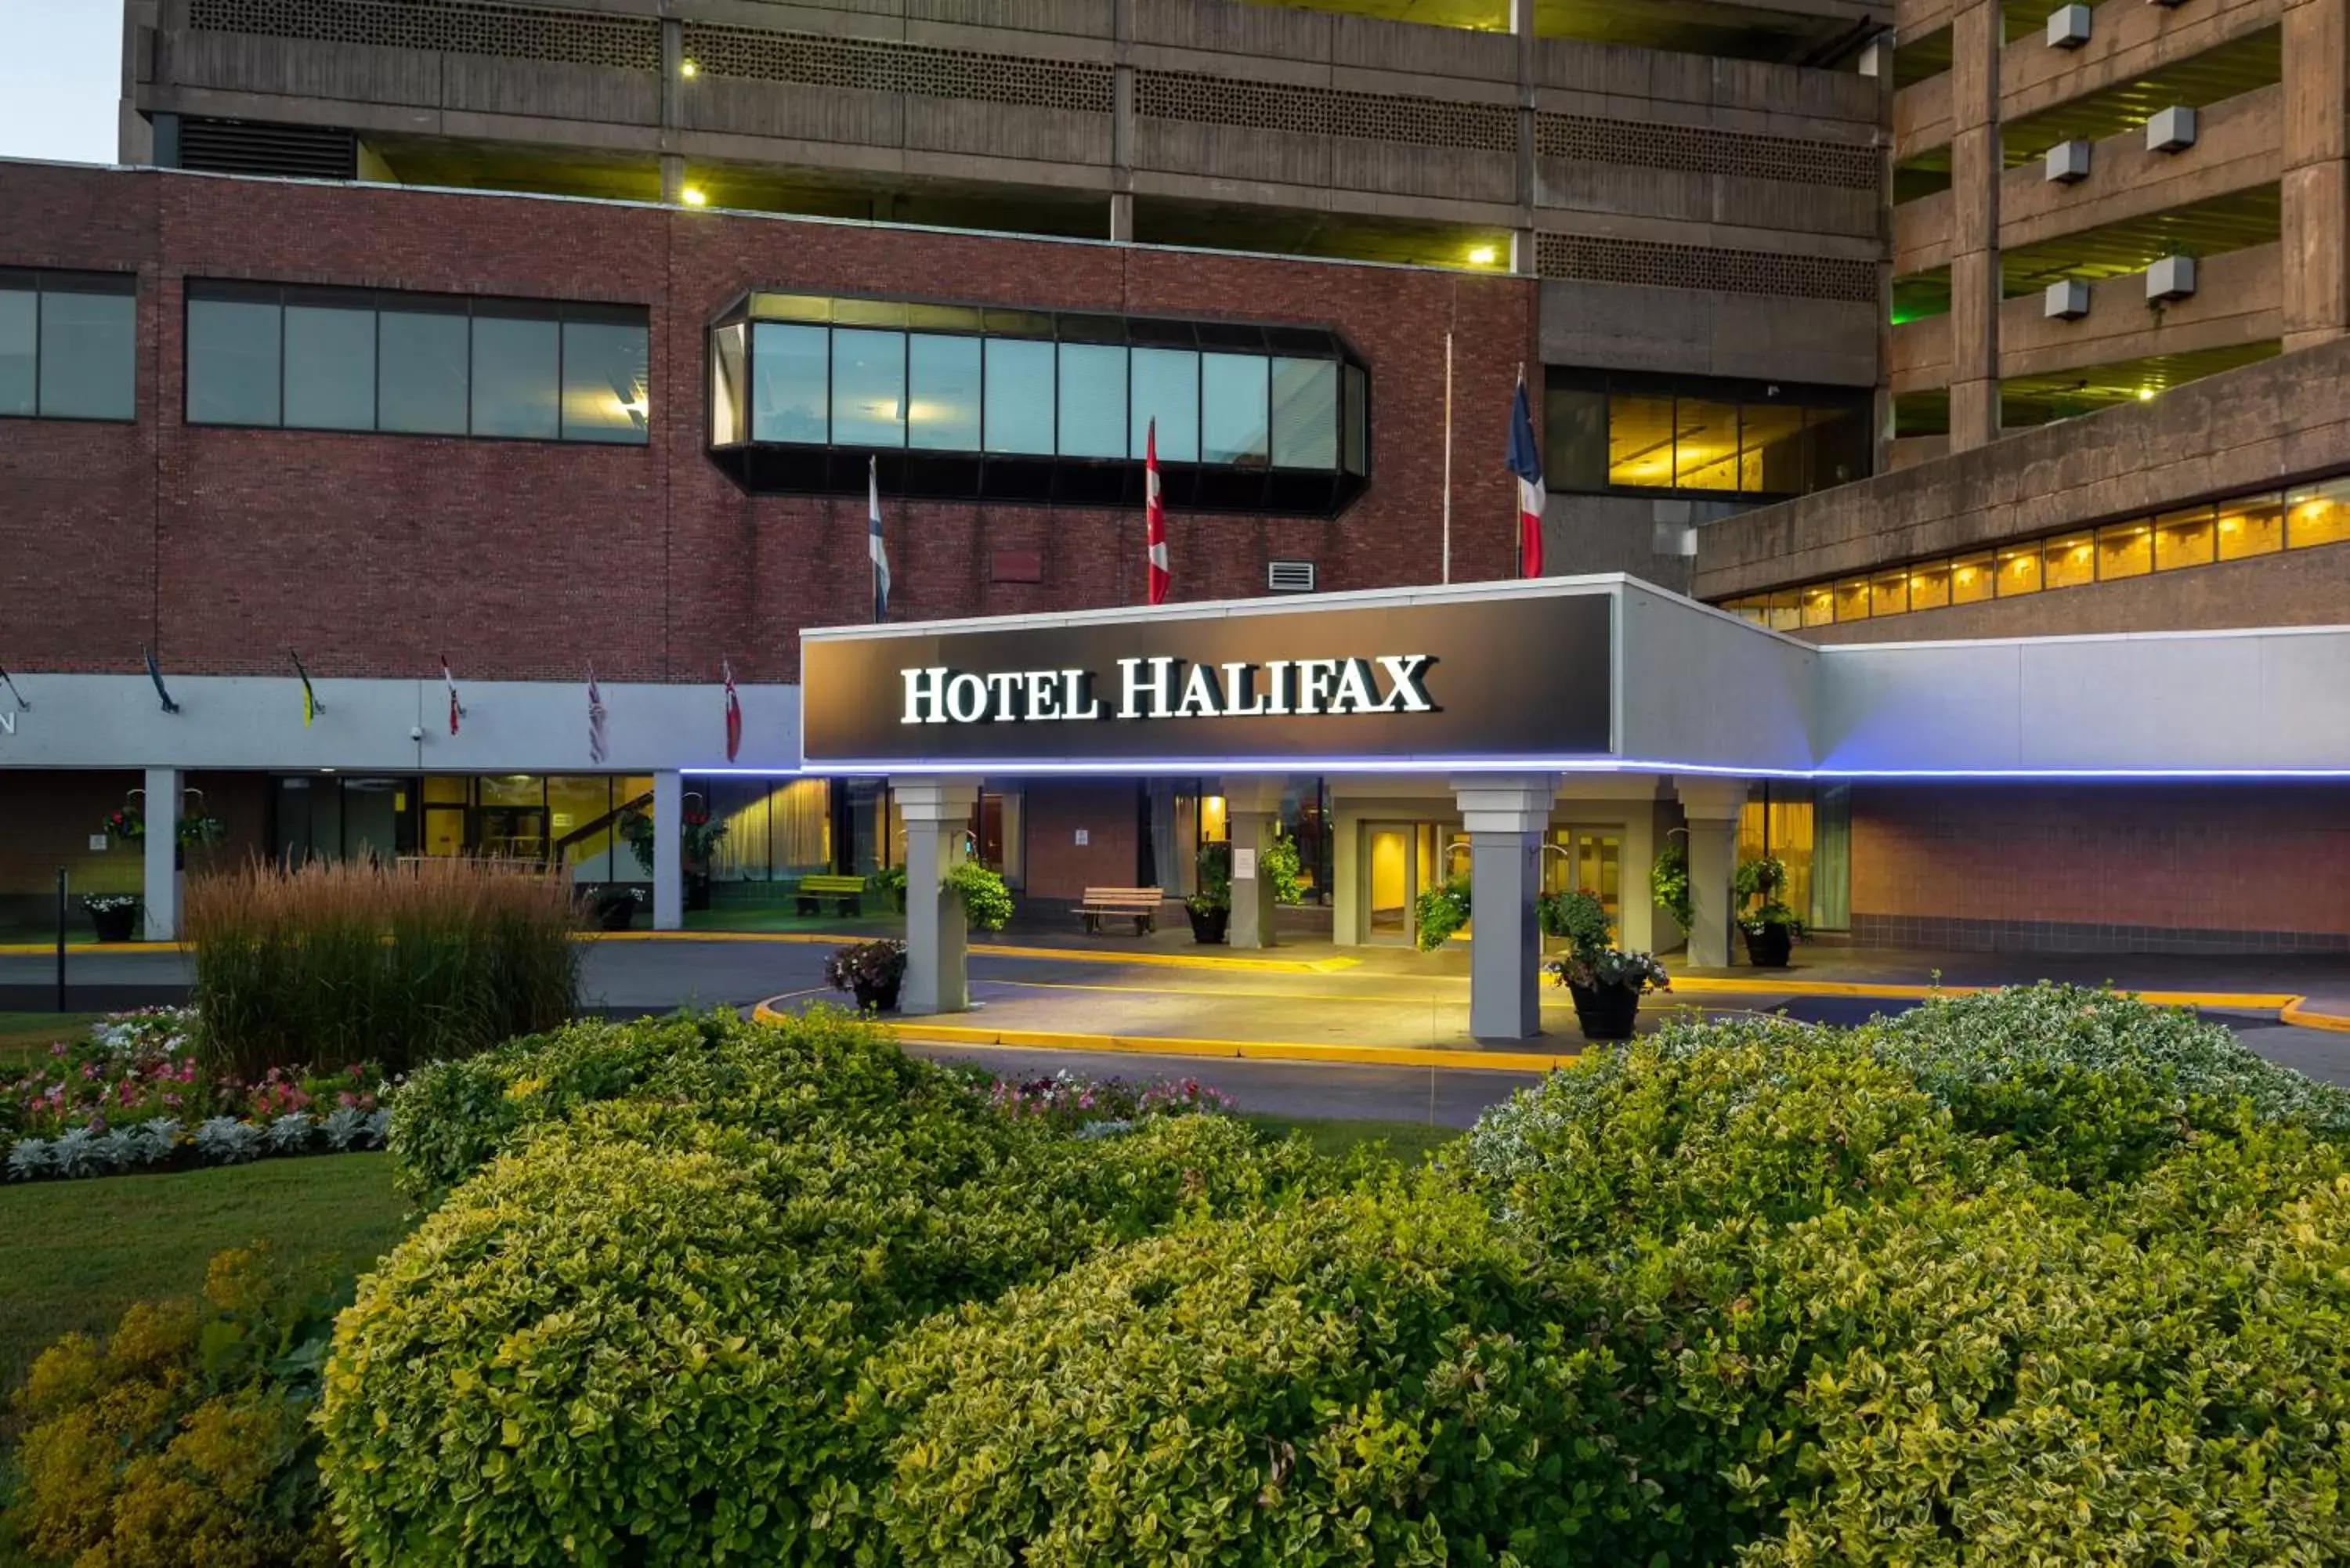 Facade/entrance, Property Building in Hotel Halifax